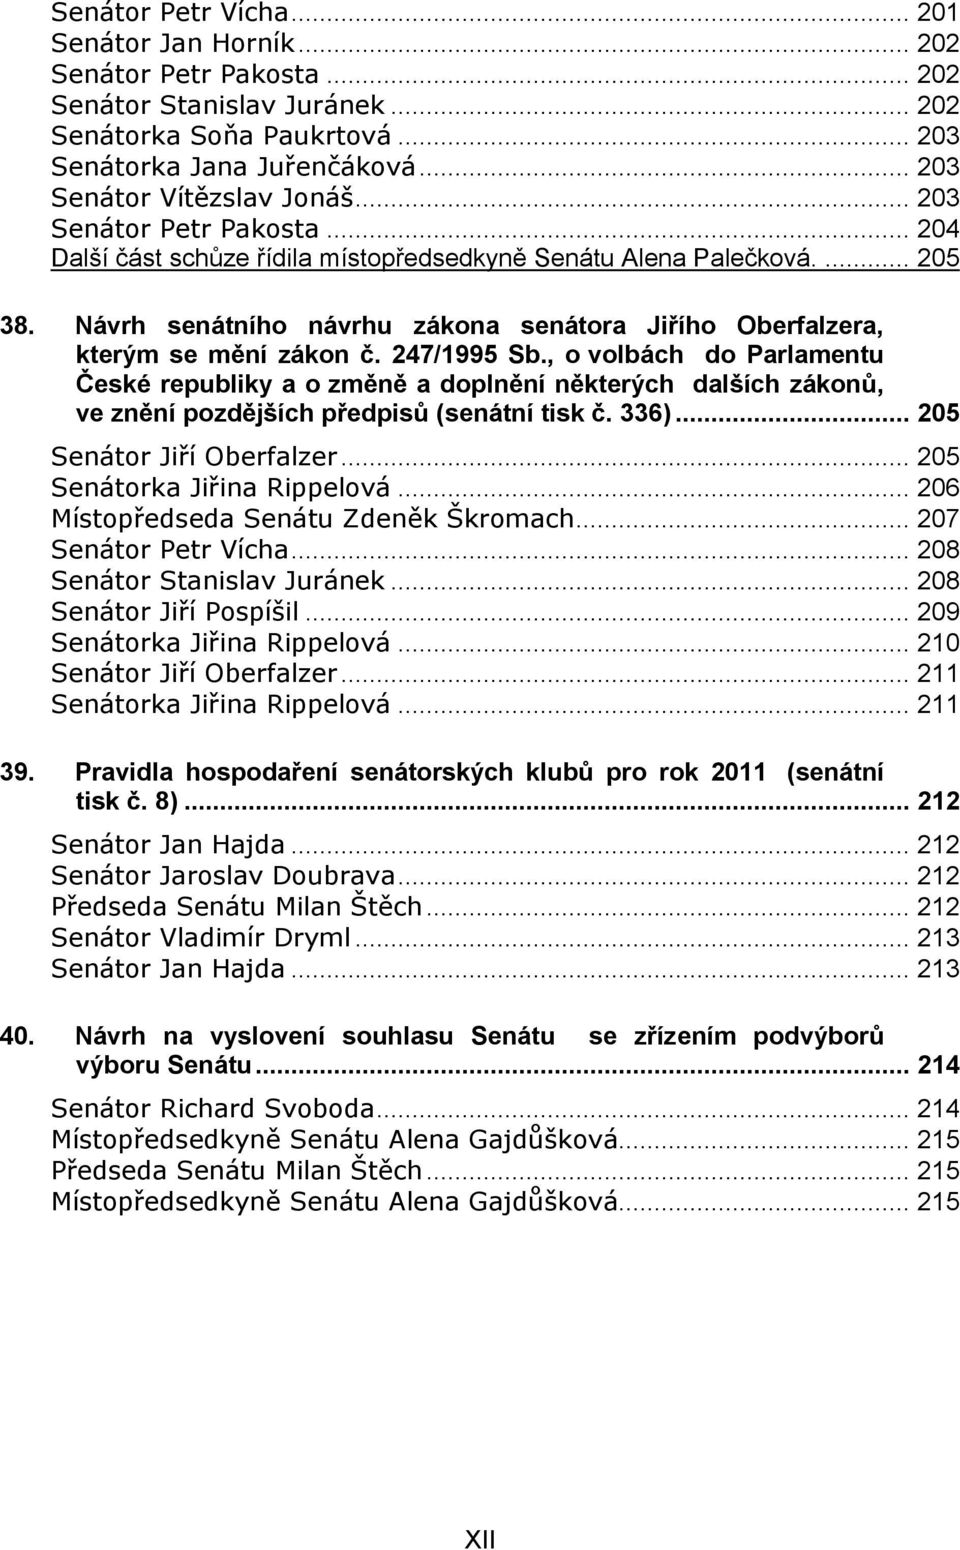 Návrh senátního návrhu zákona senátora Jiřího Oberfalzera, kterým se mění zákon č. 247/1995 Sb.